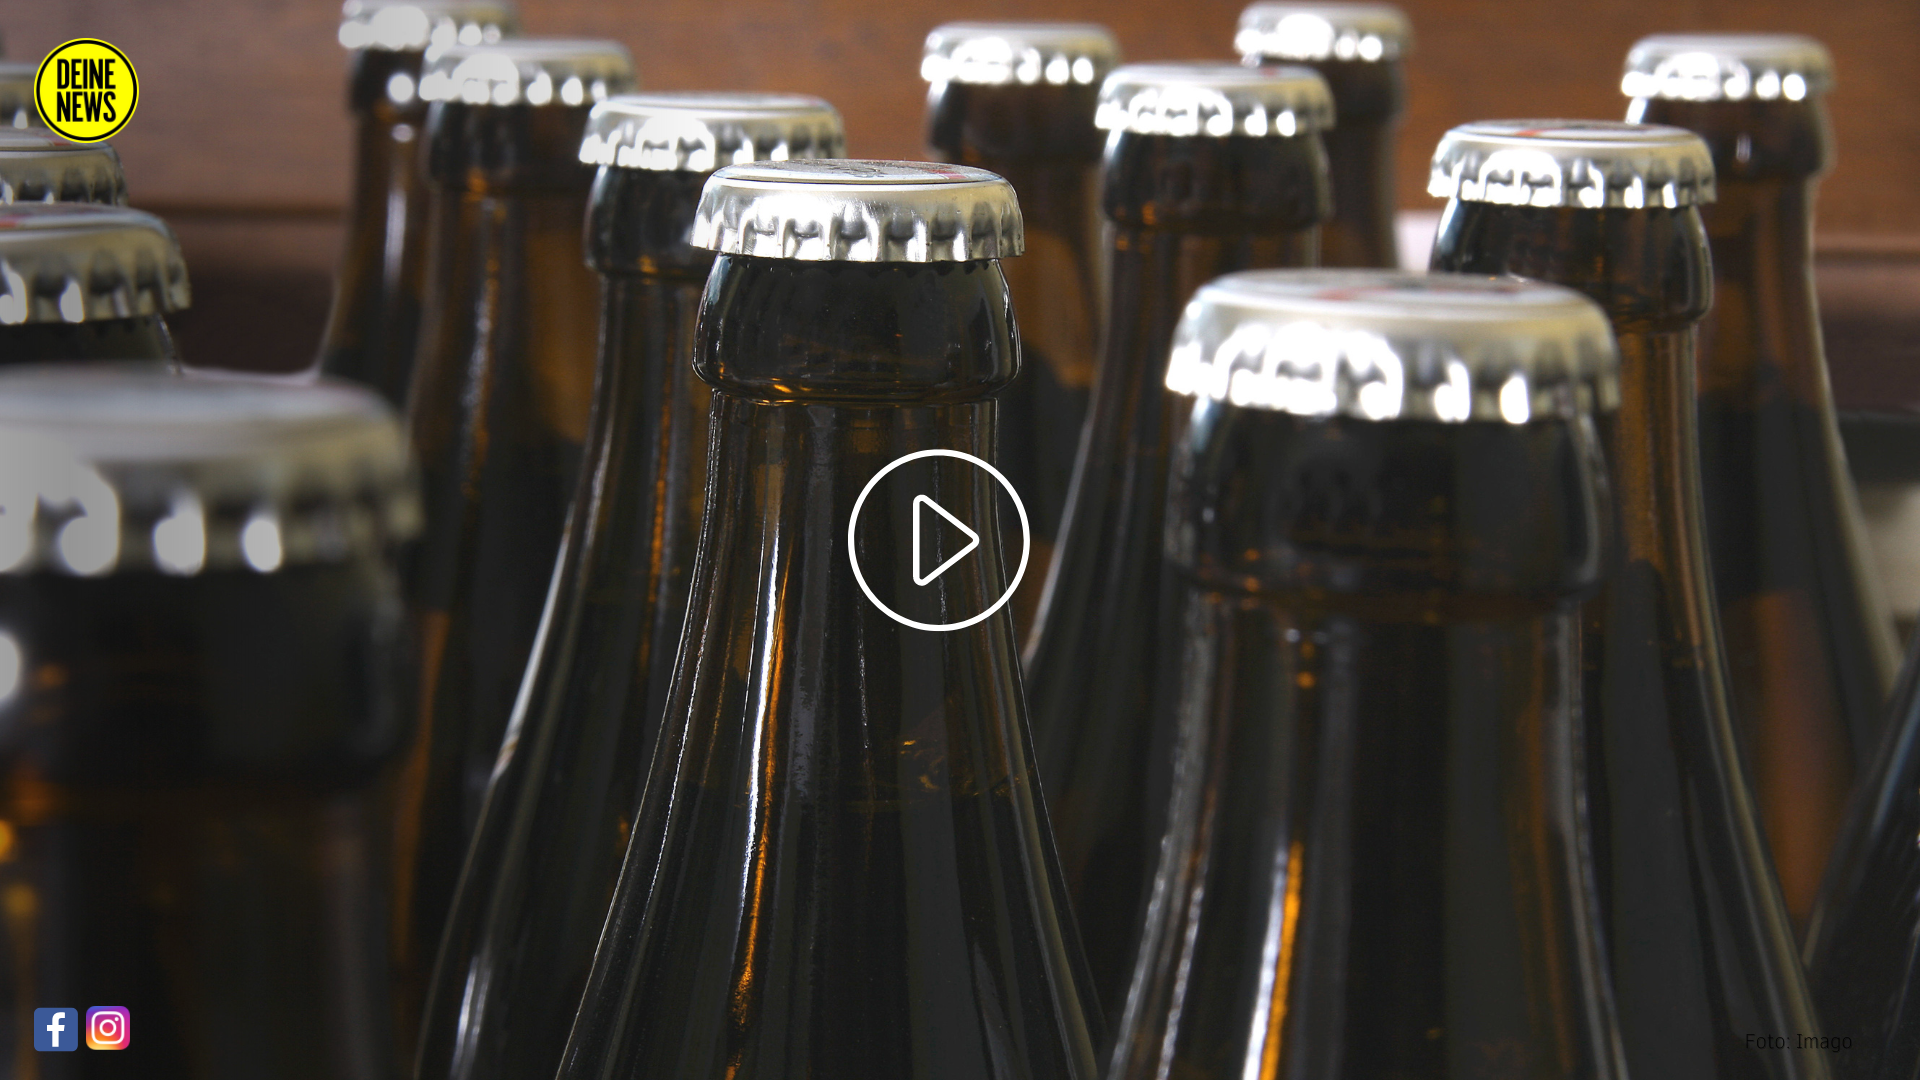 Brauereien in Alarmbereitschaft: Müssen Milliarden Bierflaschen zerstört werden?